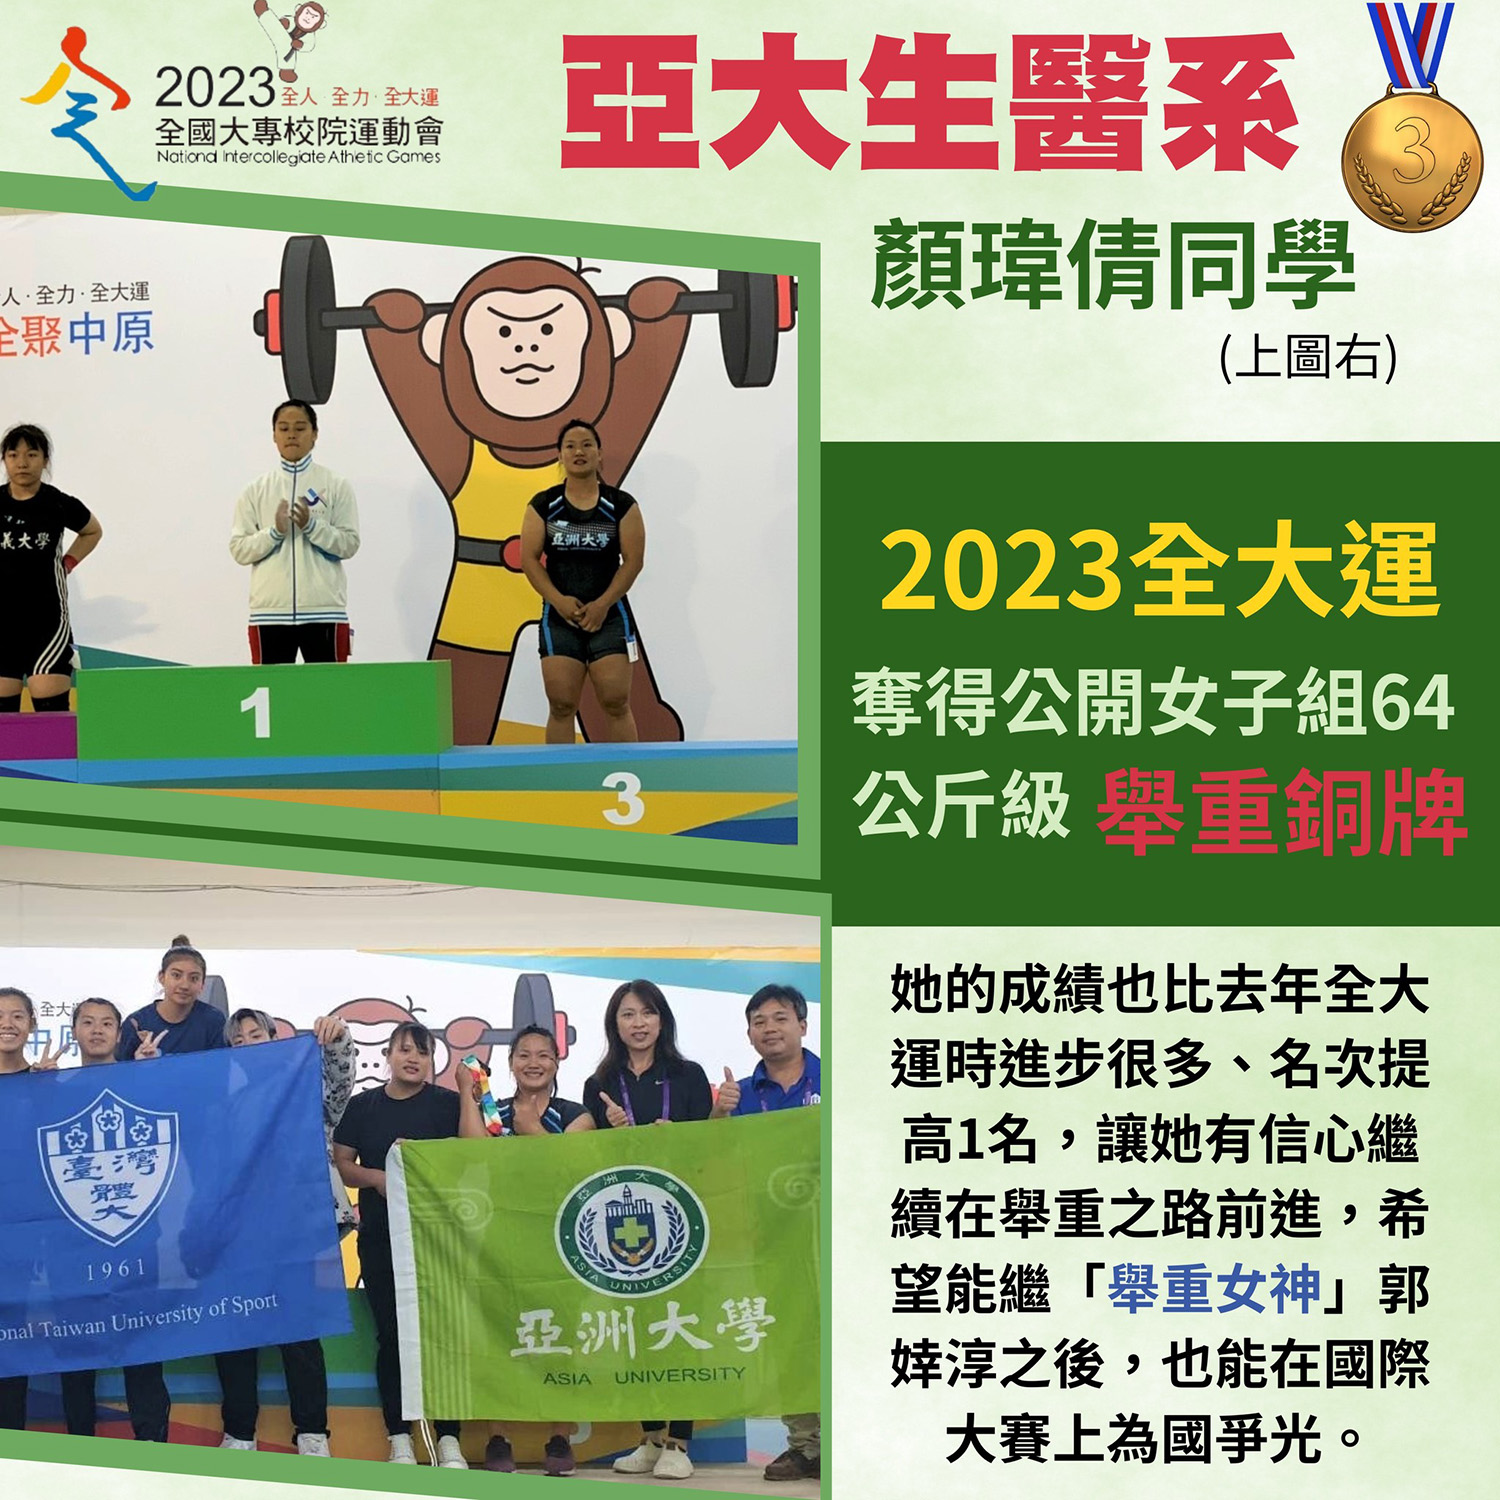 亞大生醫系顏瑋倩同學 2023全大運奪得公開女子組64公斤級舉重銅牌